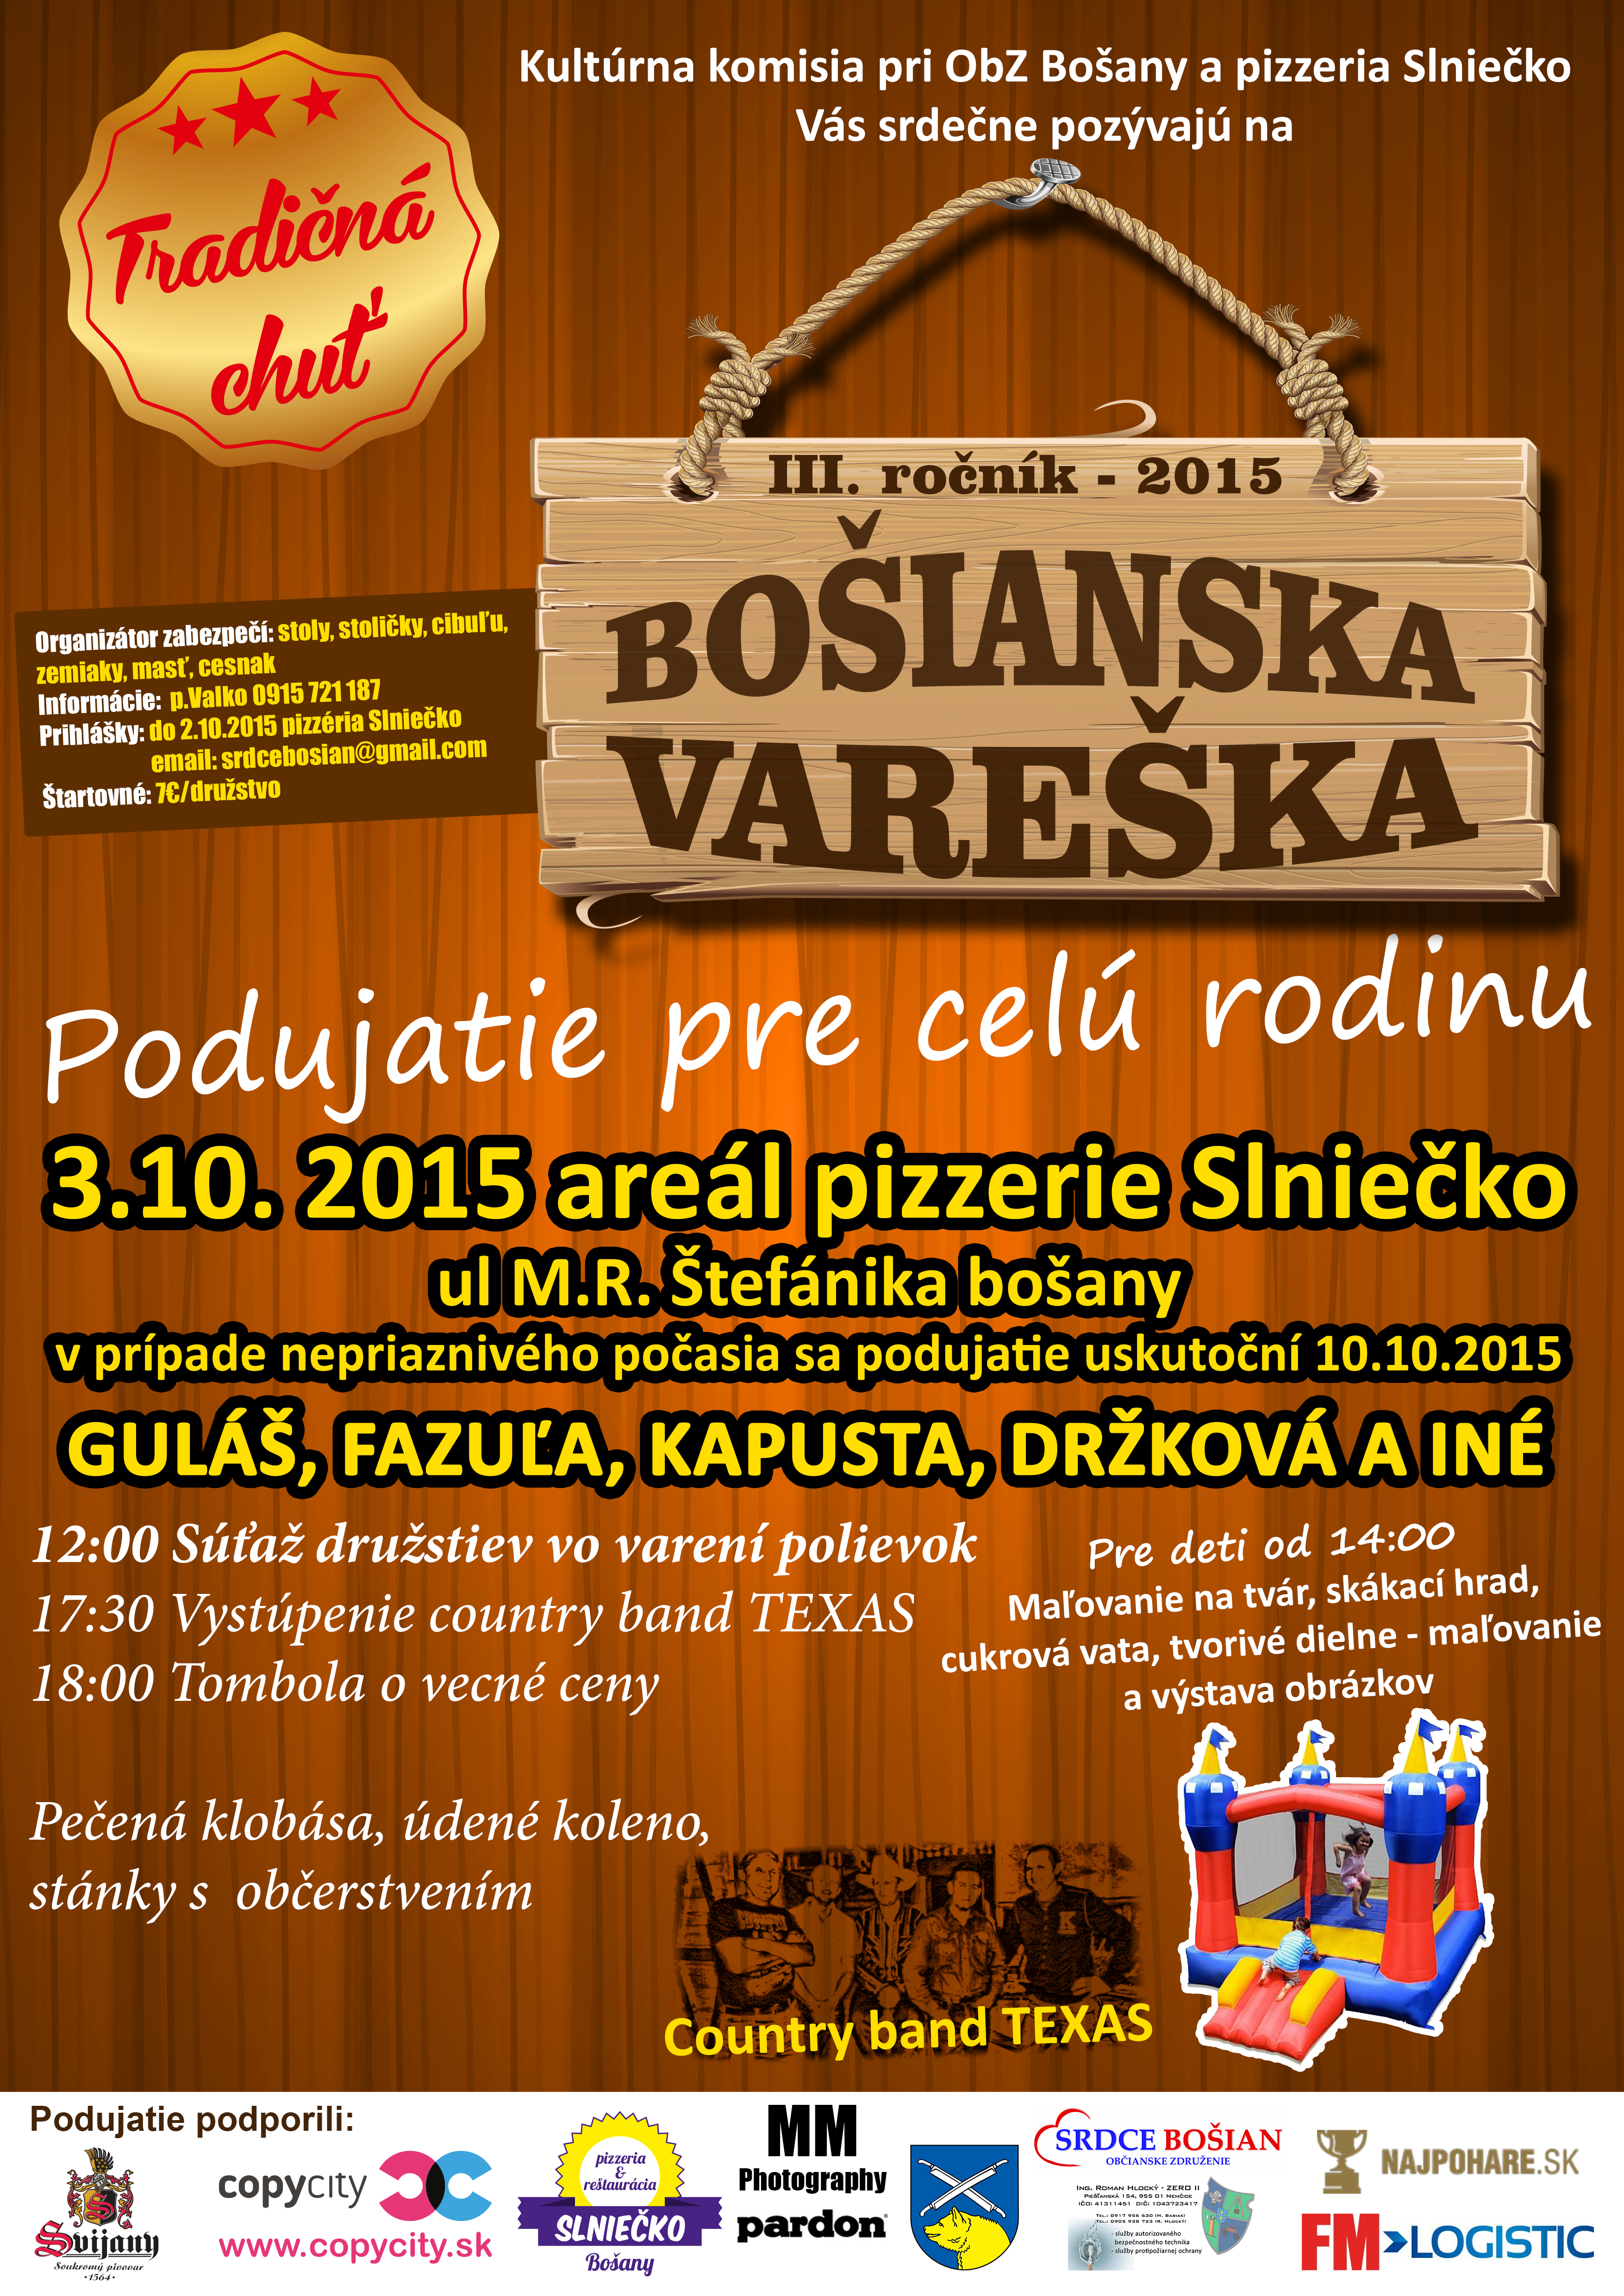 Boianska vareka 2015 - 3. ronk